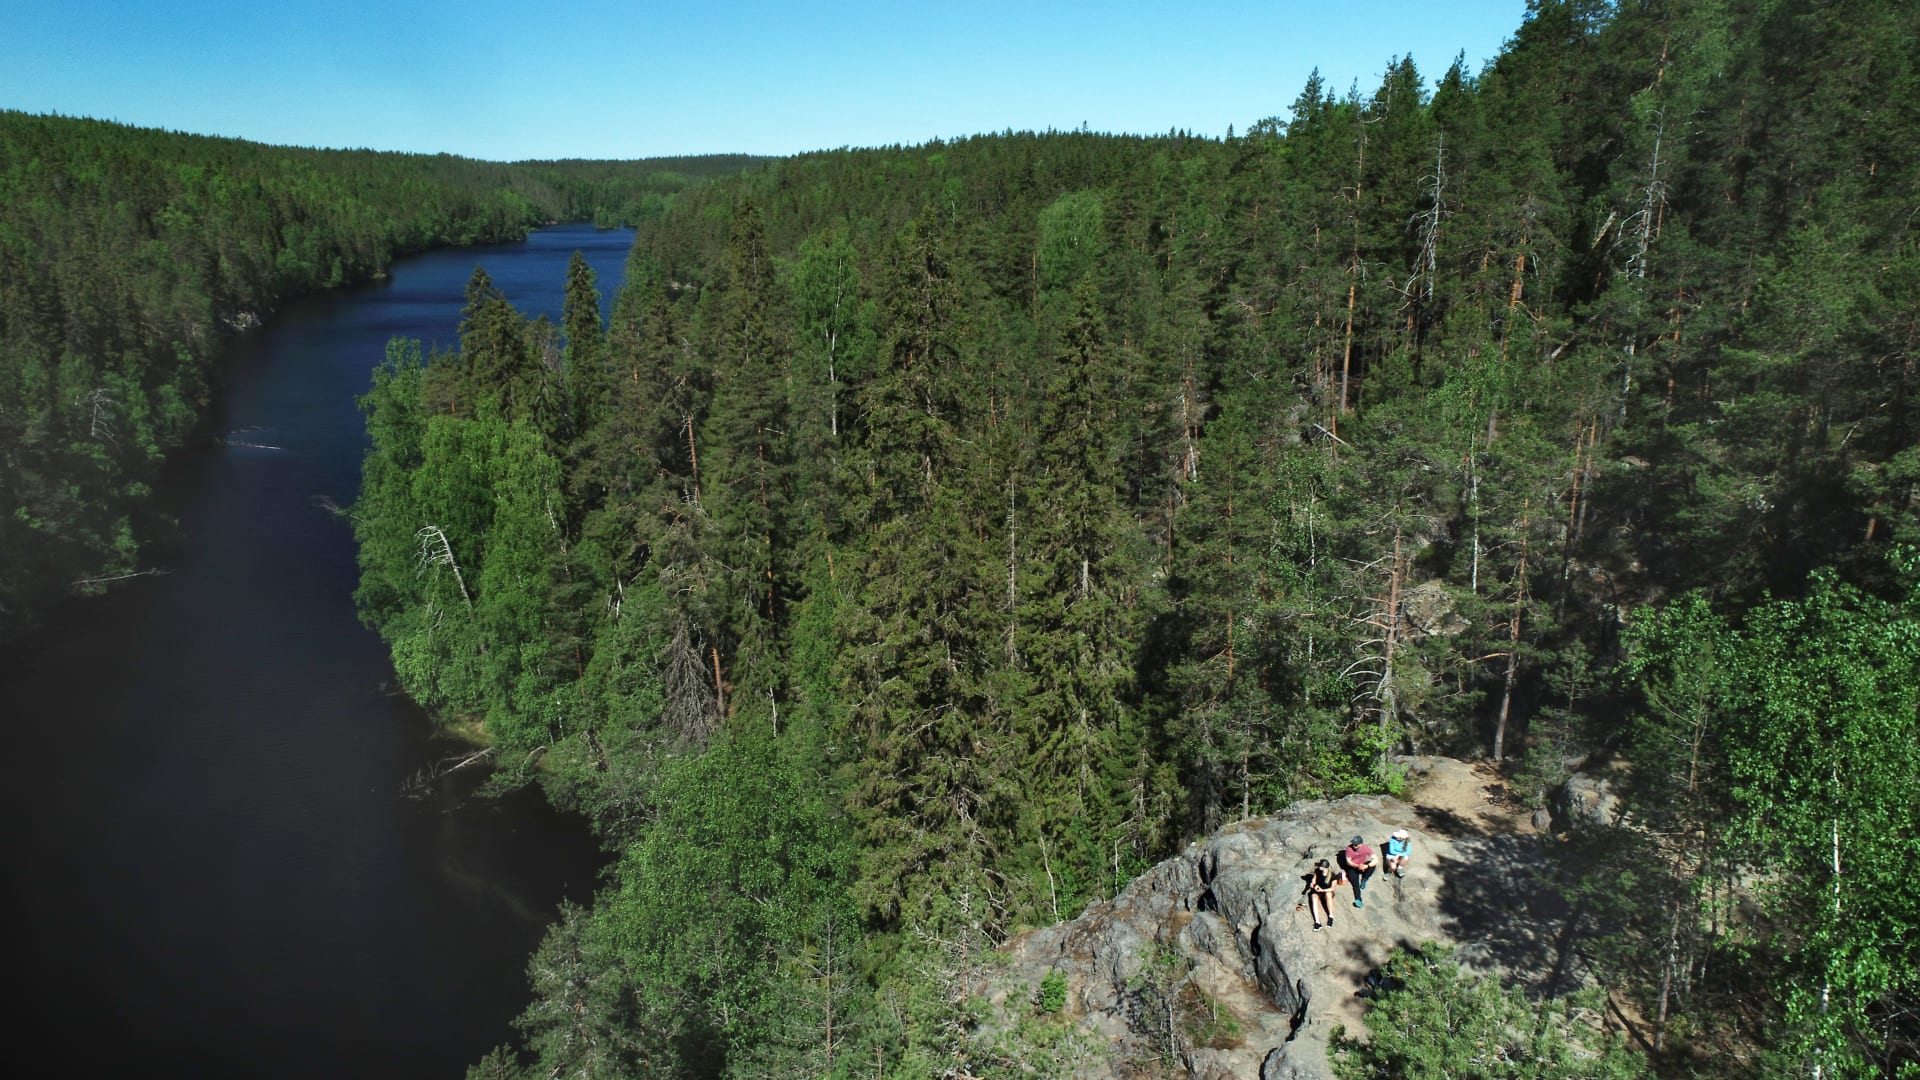 Ilmakuva kapeasta järvestä, jonka oikealla puolella kohoaa korkea kallio, muutoin järvi on metsien ympäröimä. Kalliolla istuu kolme retkeilijää. Kuva: Jari Salonen.